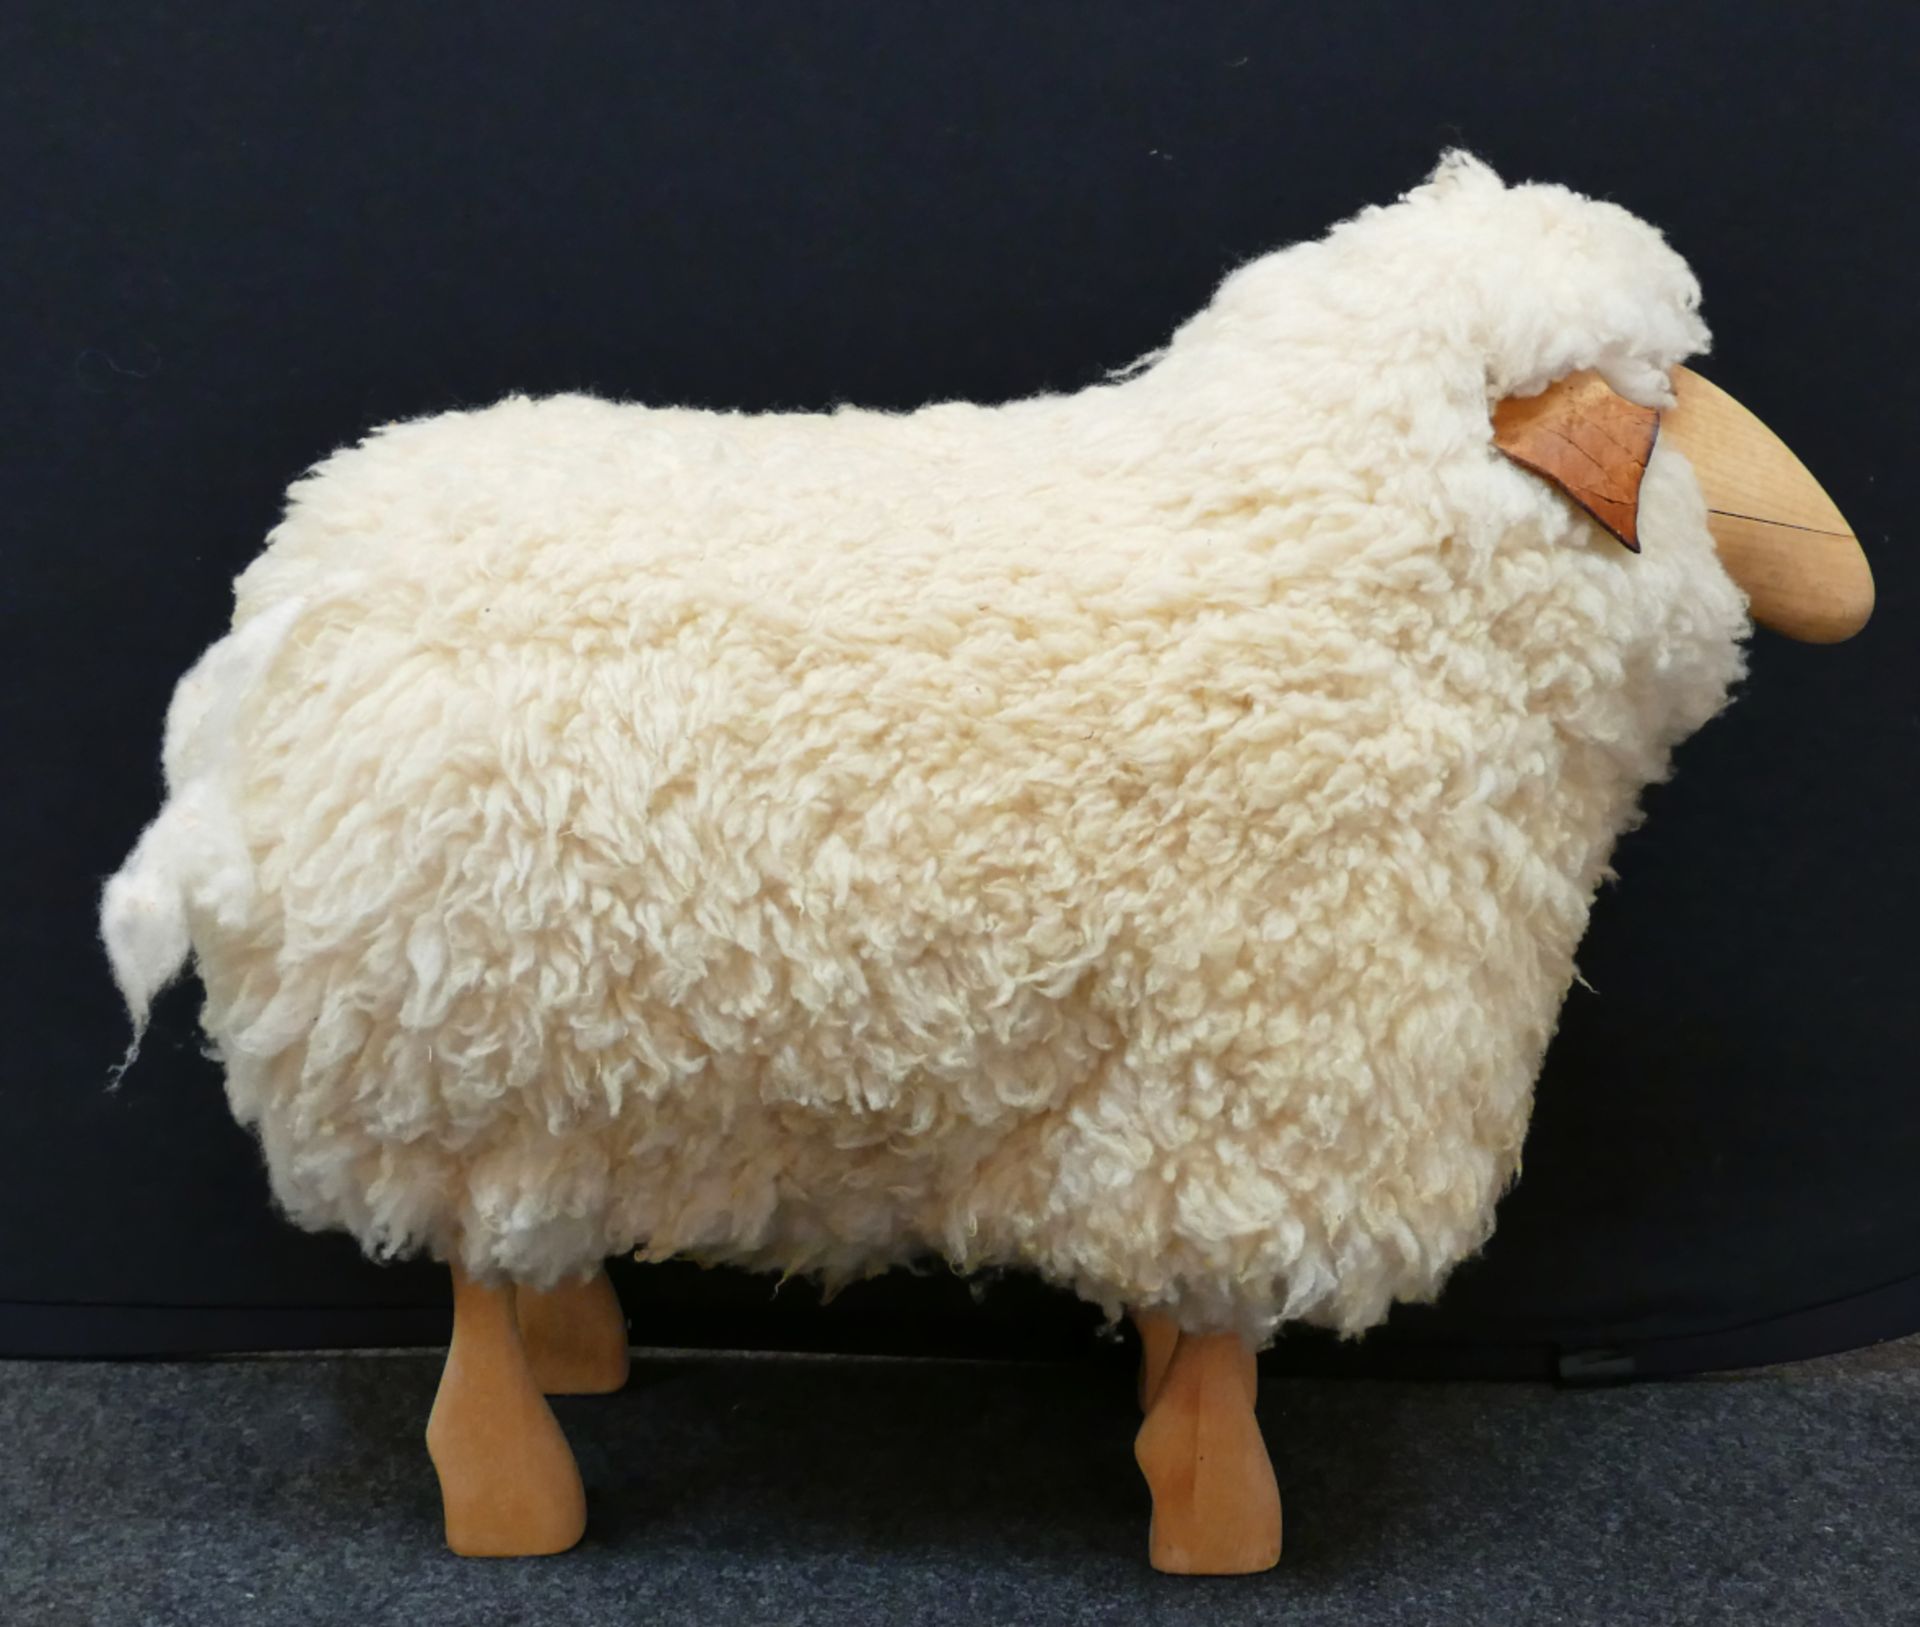 1 Hocker "Sheep" wohl Hans-Peter KRAFFT für MEIER 1960er Jahre, Holz/Wolle, ca. 60x73x36cm, - Image 3 of 3